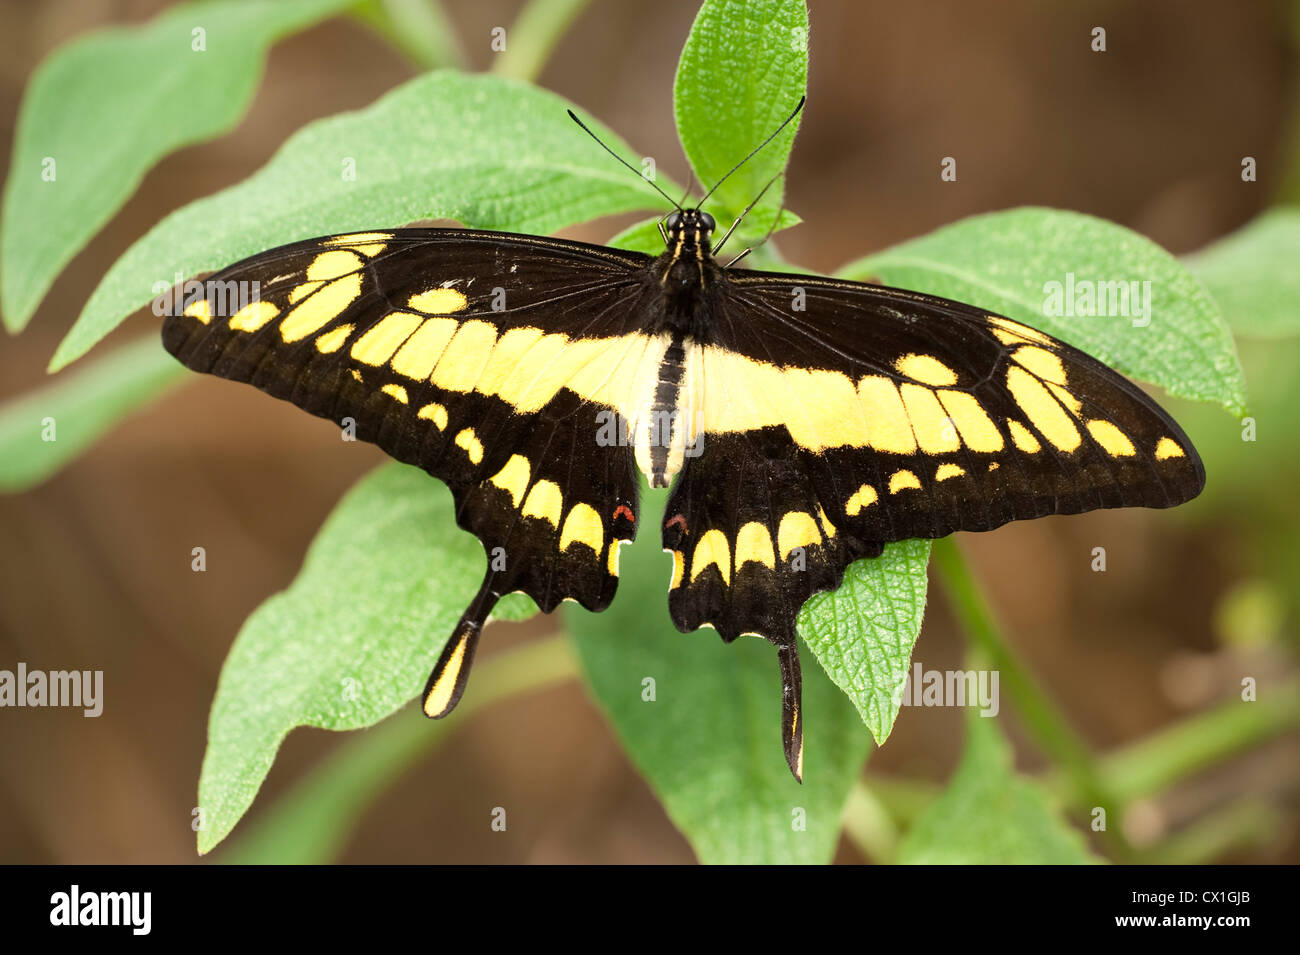 Orange Schwalbenschwanz Schmetterling Papilio Thoas USA König ruhen mit Flügel öffnen gelbe und schwarze Farben Stockfoto